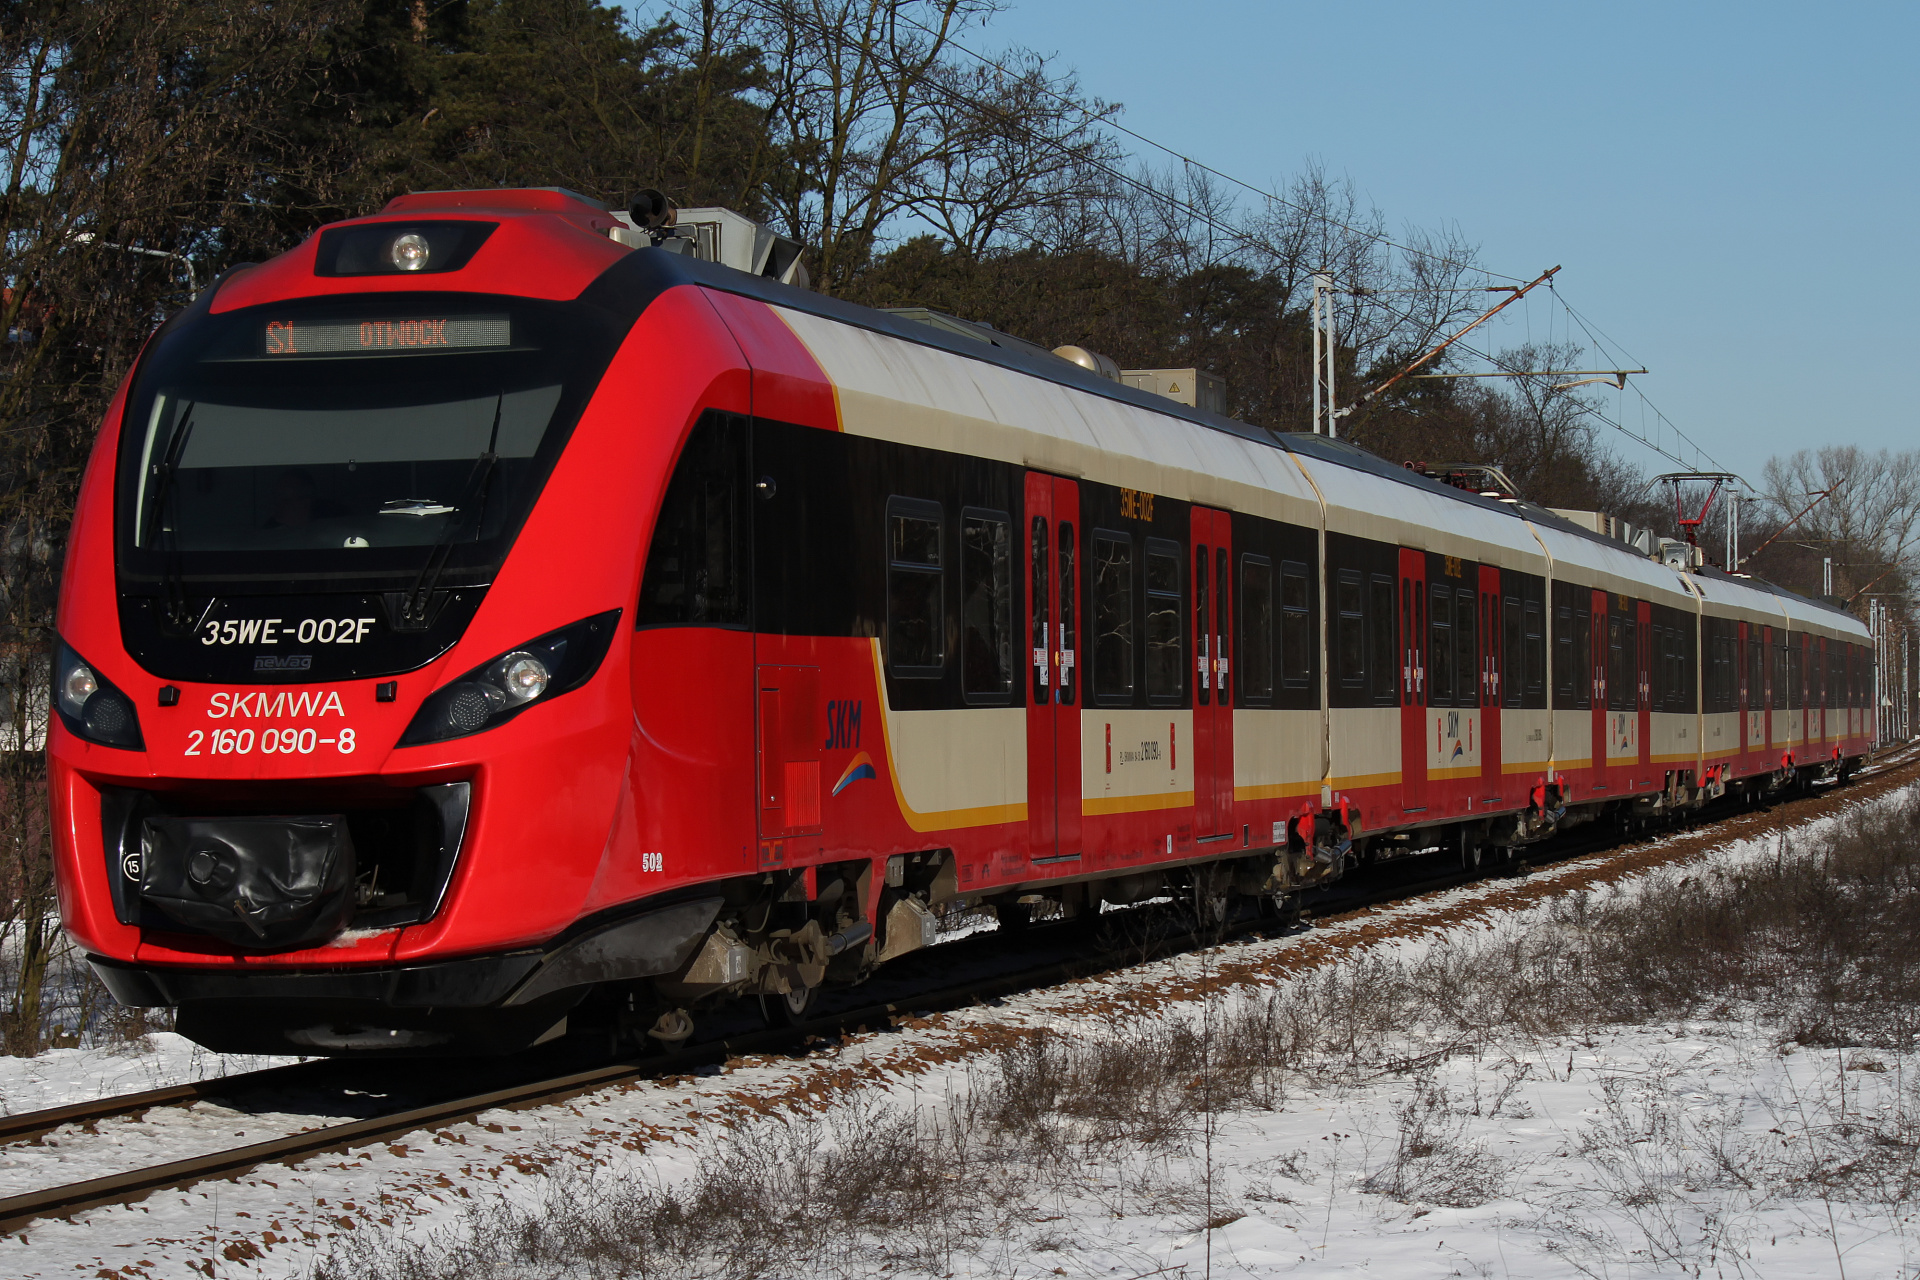 35WE-002 (Pojazdy » Pociągi i lokomotywy » Newag Impuls)